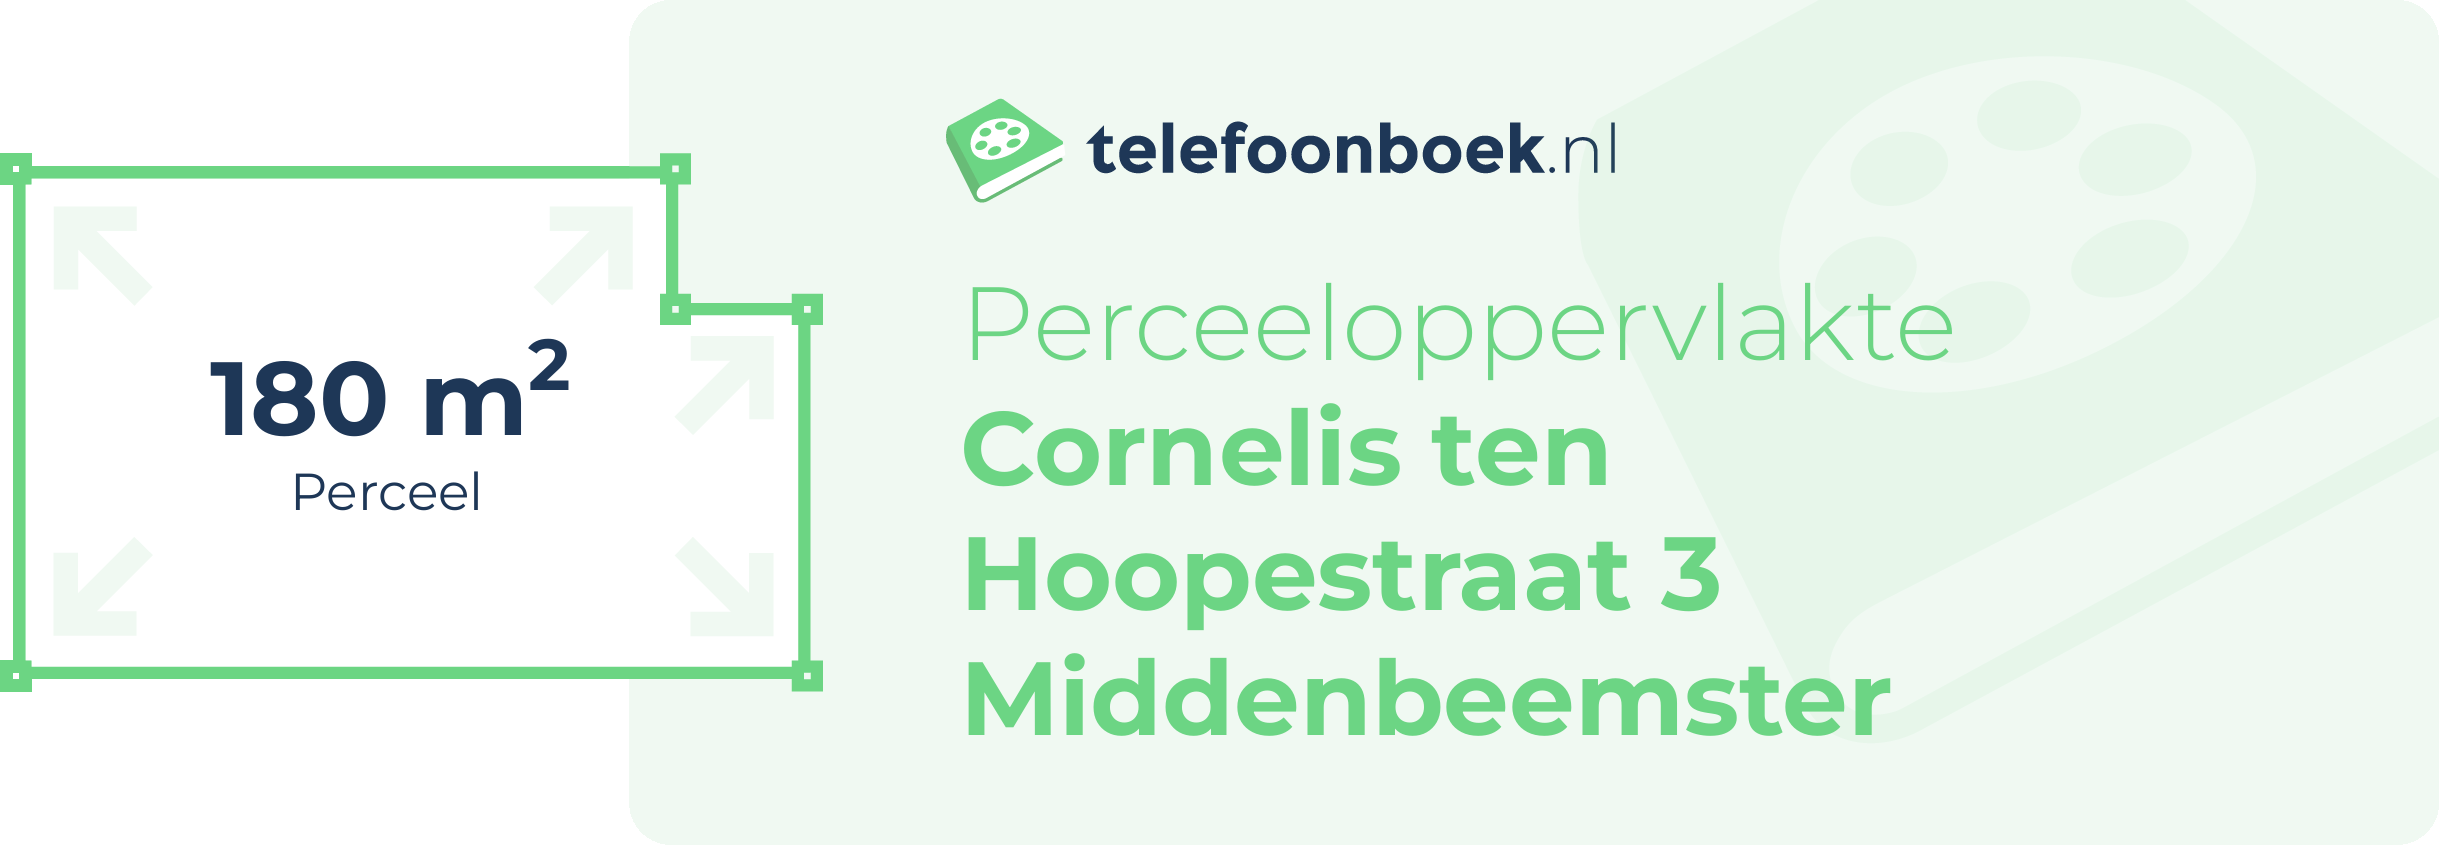 Perceeloppervlakte Cornelis Ten Hoopestraat 3 Middenbeemster